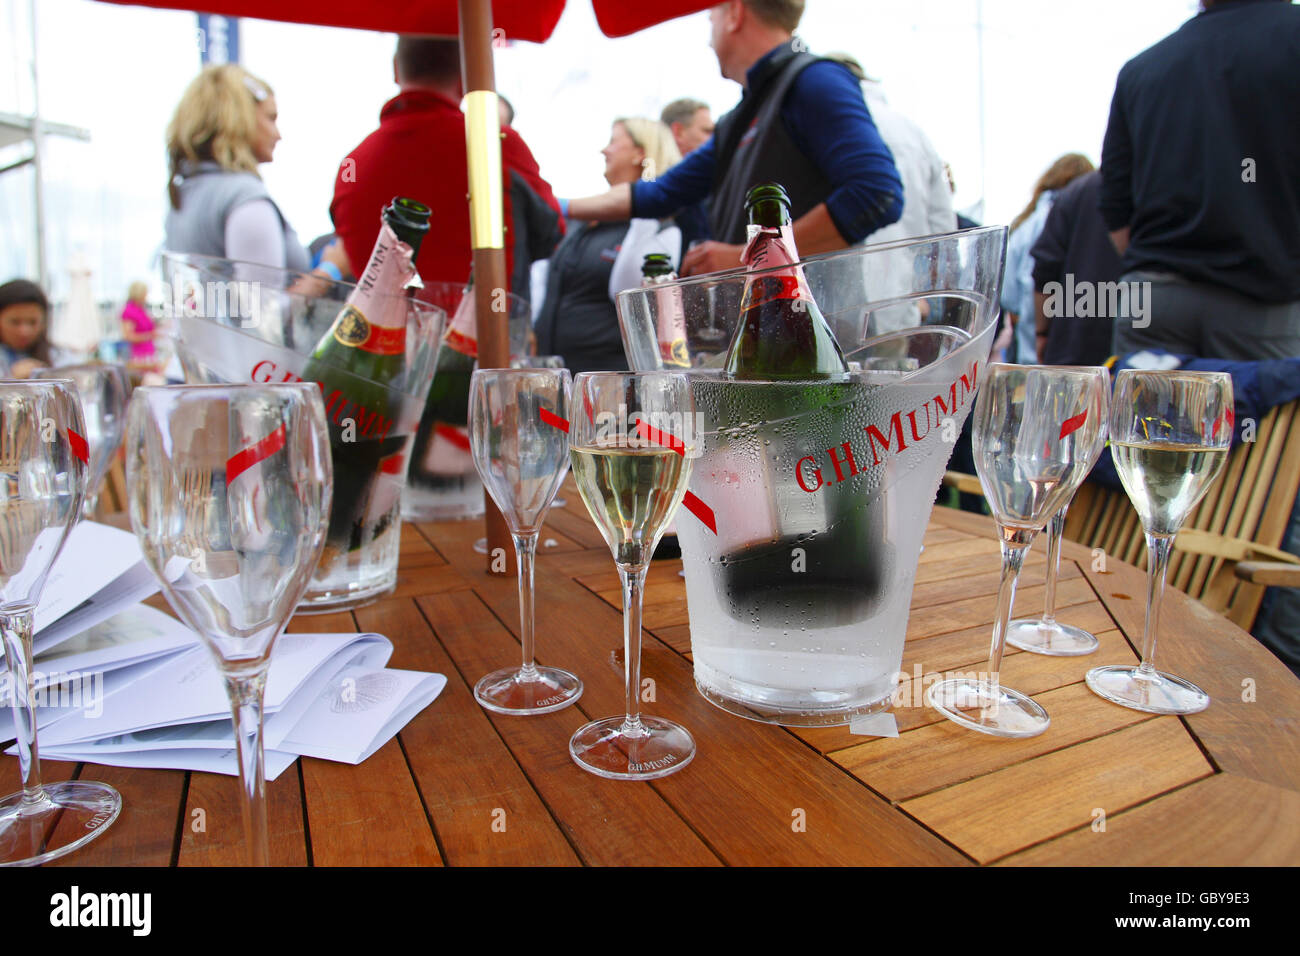 Un tavolo con bottiglie di champagne e bicchieri come lo champagne scorre  al bar Champagne Mumm a Cowes Yacht Haven il terzo giorno della settimana  dei Cowes, la regata velica famosa in